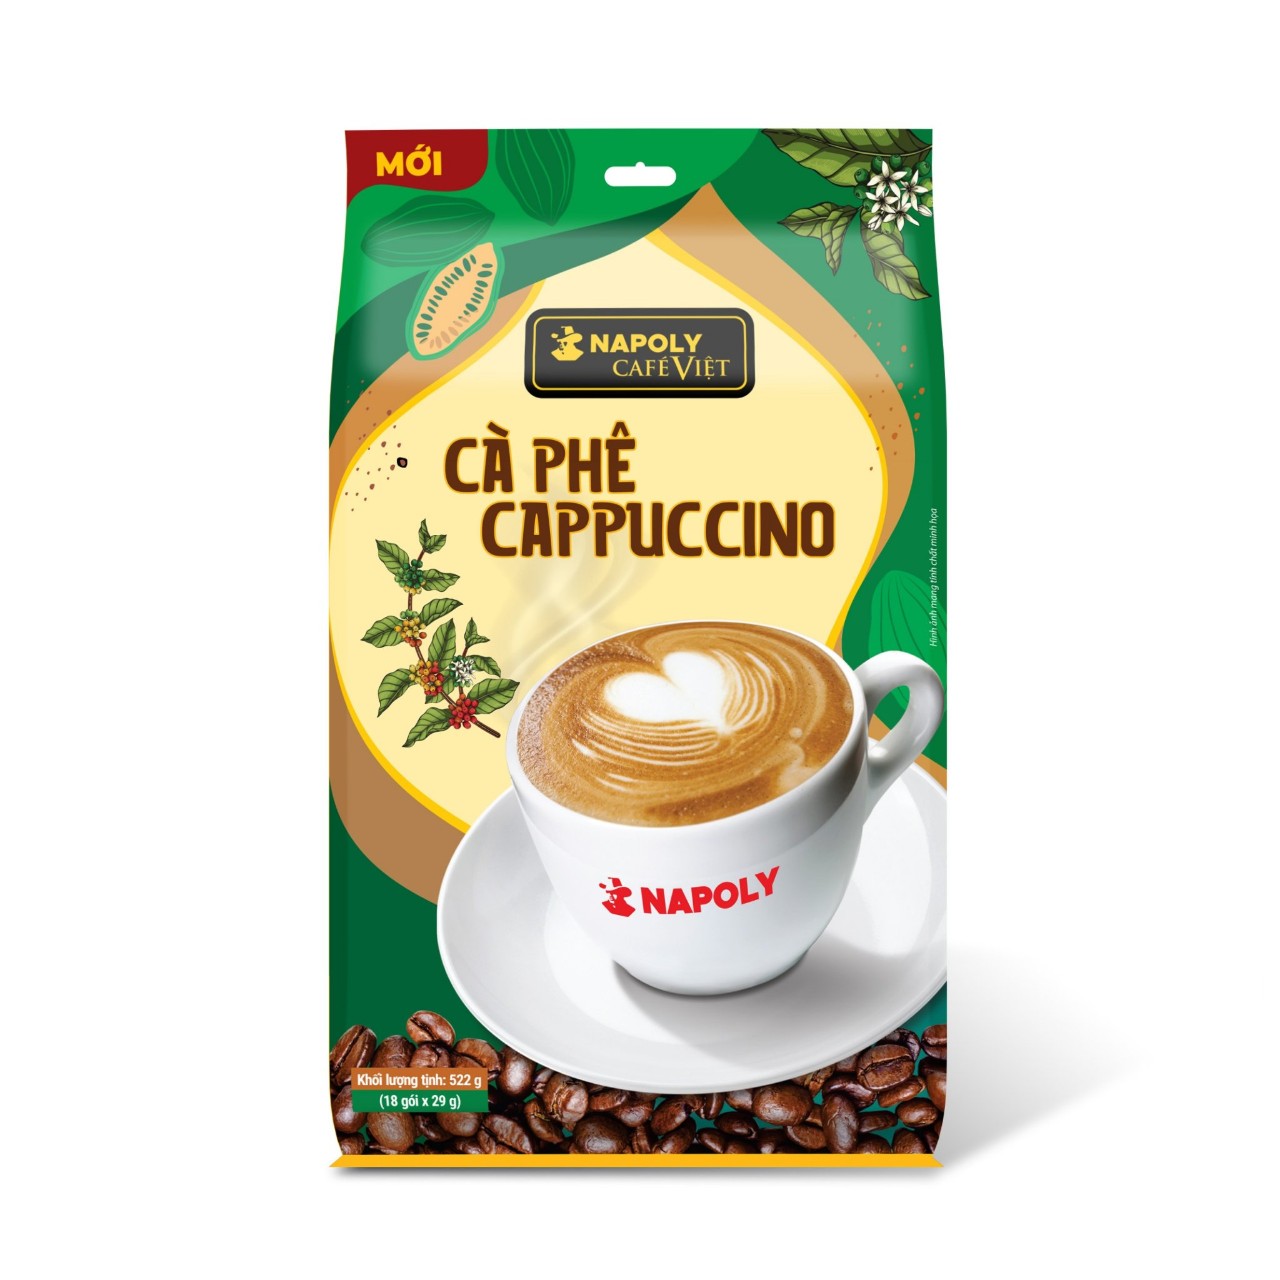 Cà phê sữa hòa tan Napoly Coffee Cappuccino bổ sung Socola túi lớn (18 gói x 29g)